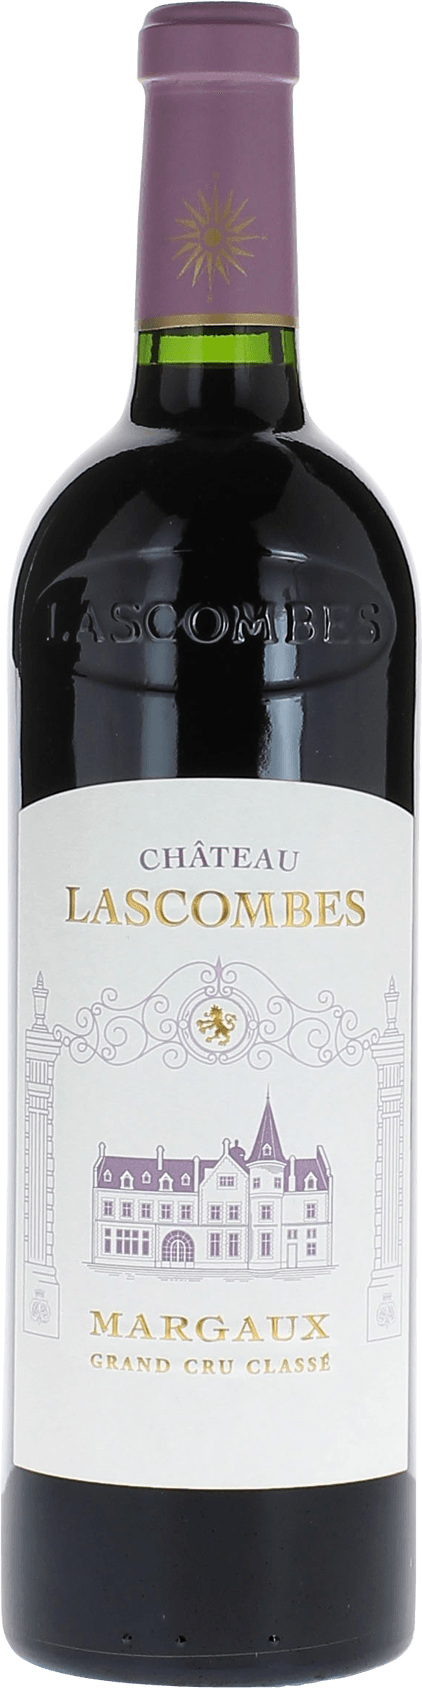 Lascombes 1986 2me Grand cru class Margaux, Bordeaux rouge